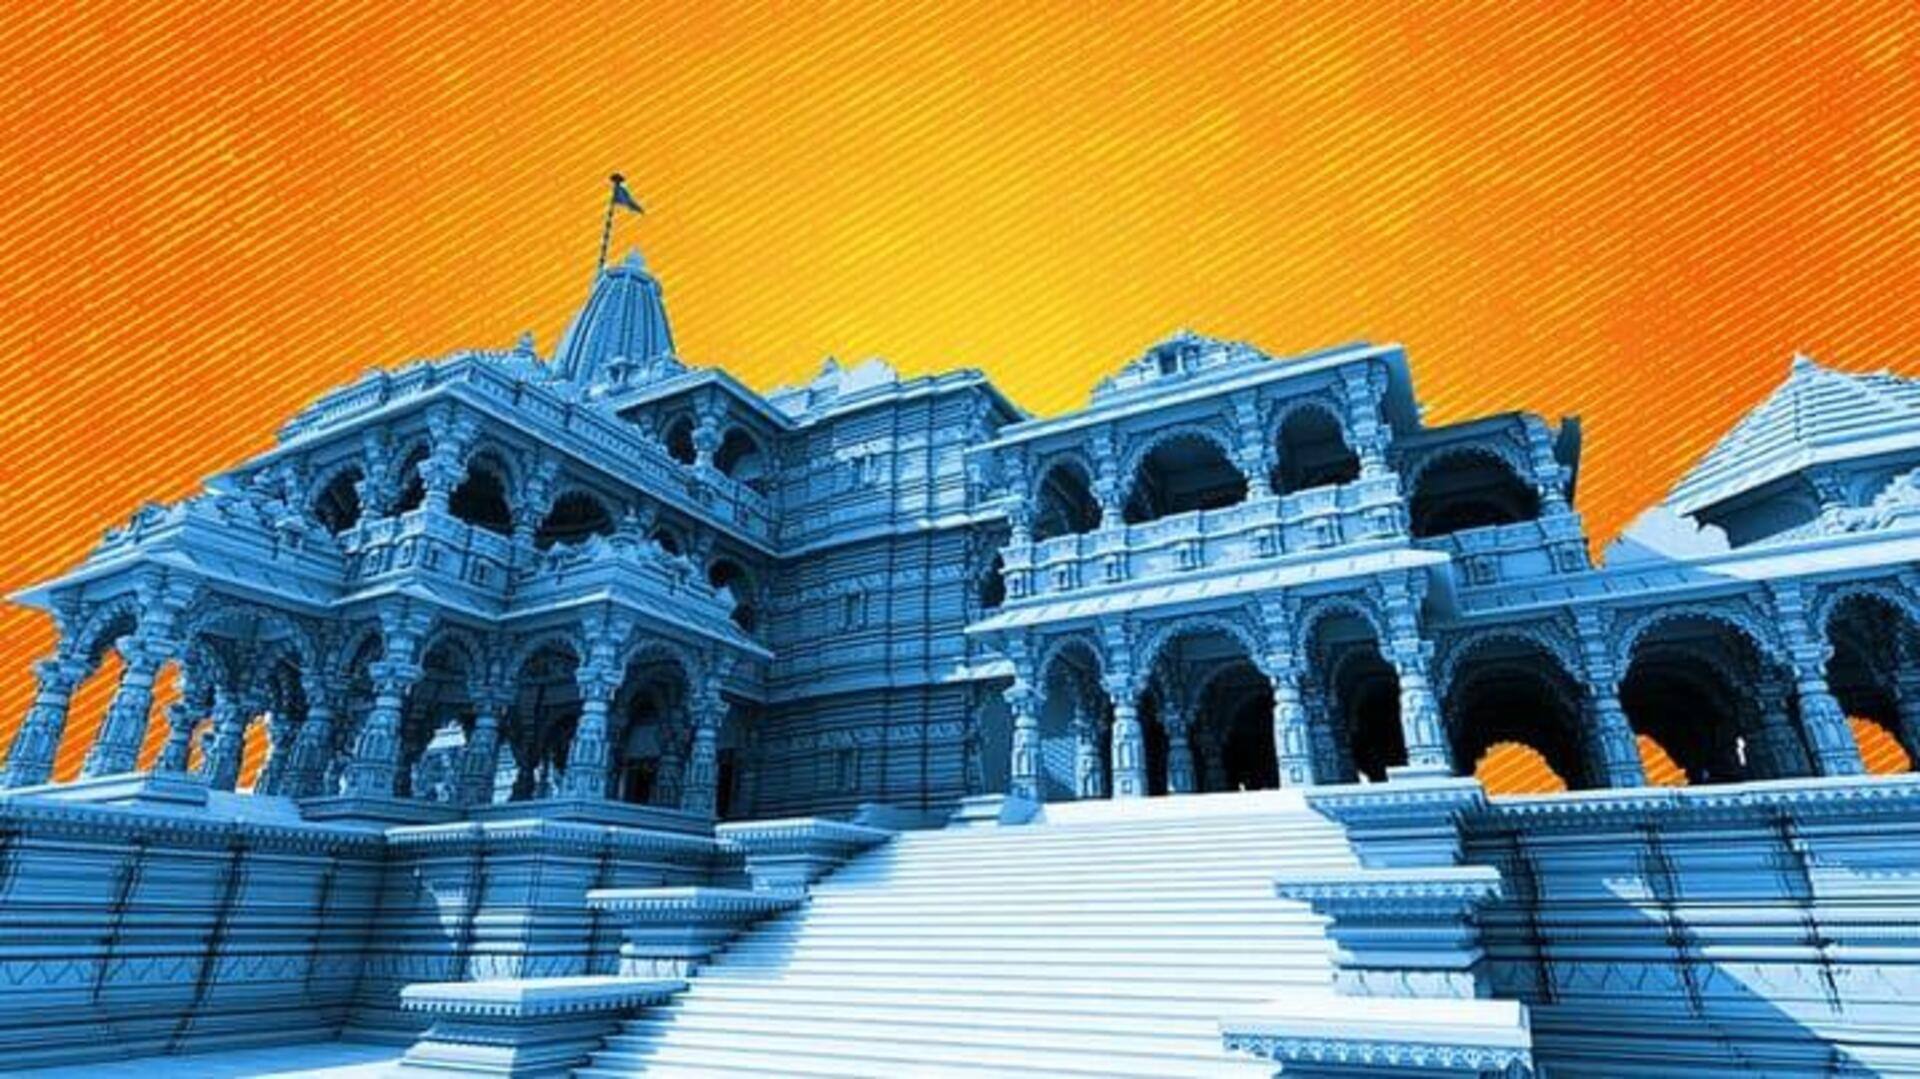 అయోధ్యలోని శ్రీరాముడి ఆలయం వద్ద రూ. 100 కోట్లతో 'లోటస్ ఫౌంటెన్' ఏర్పాటు 